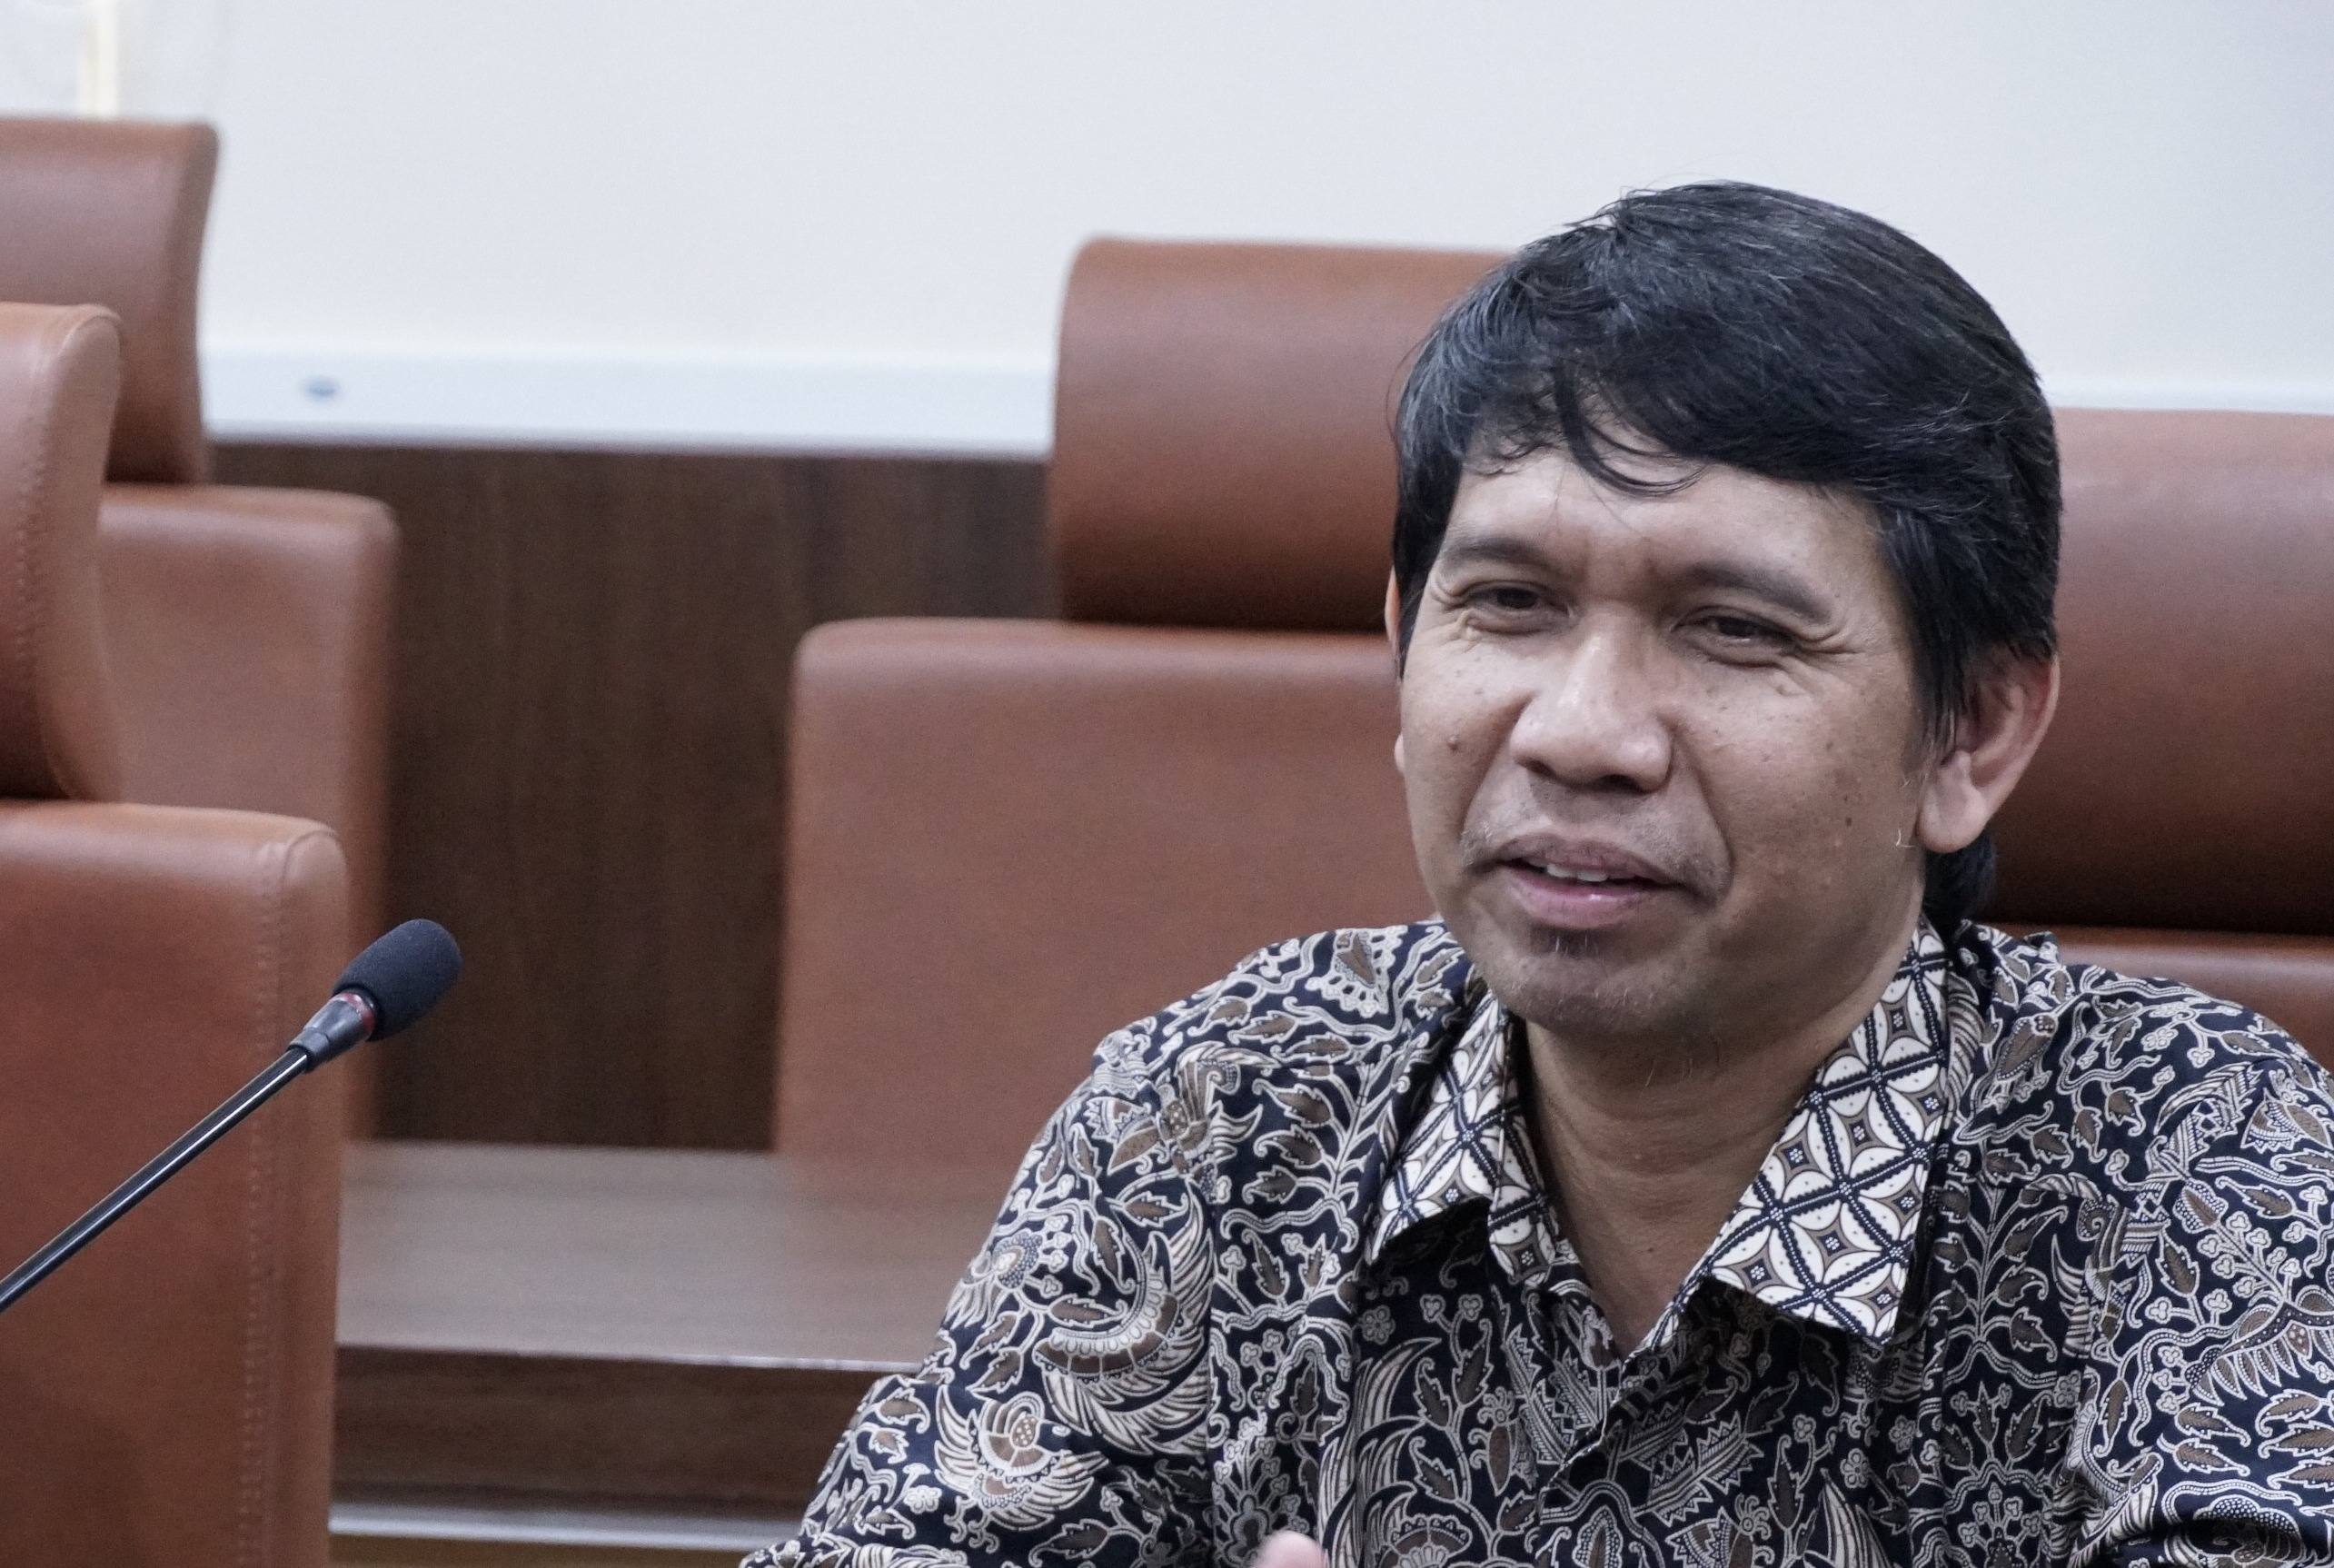 Jawaban dan Klarifikasi Lengkap Rektor ITK Prof Budi Santoso Setelah Viral karena Pernyataan Bermuatan SARA